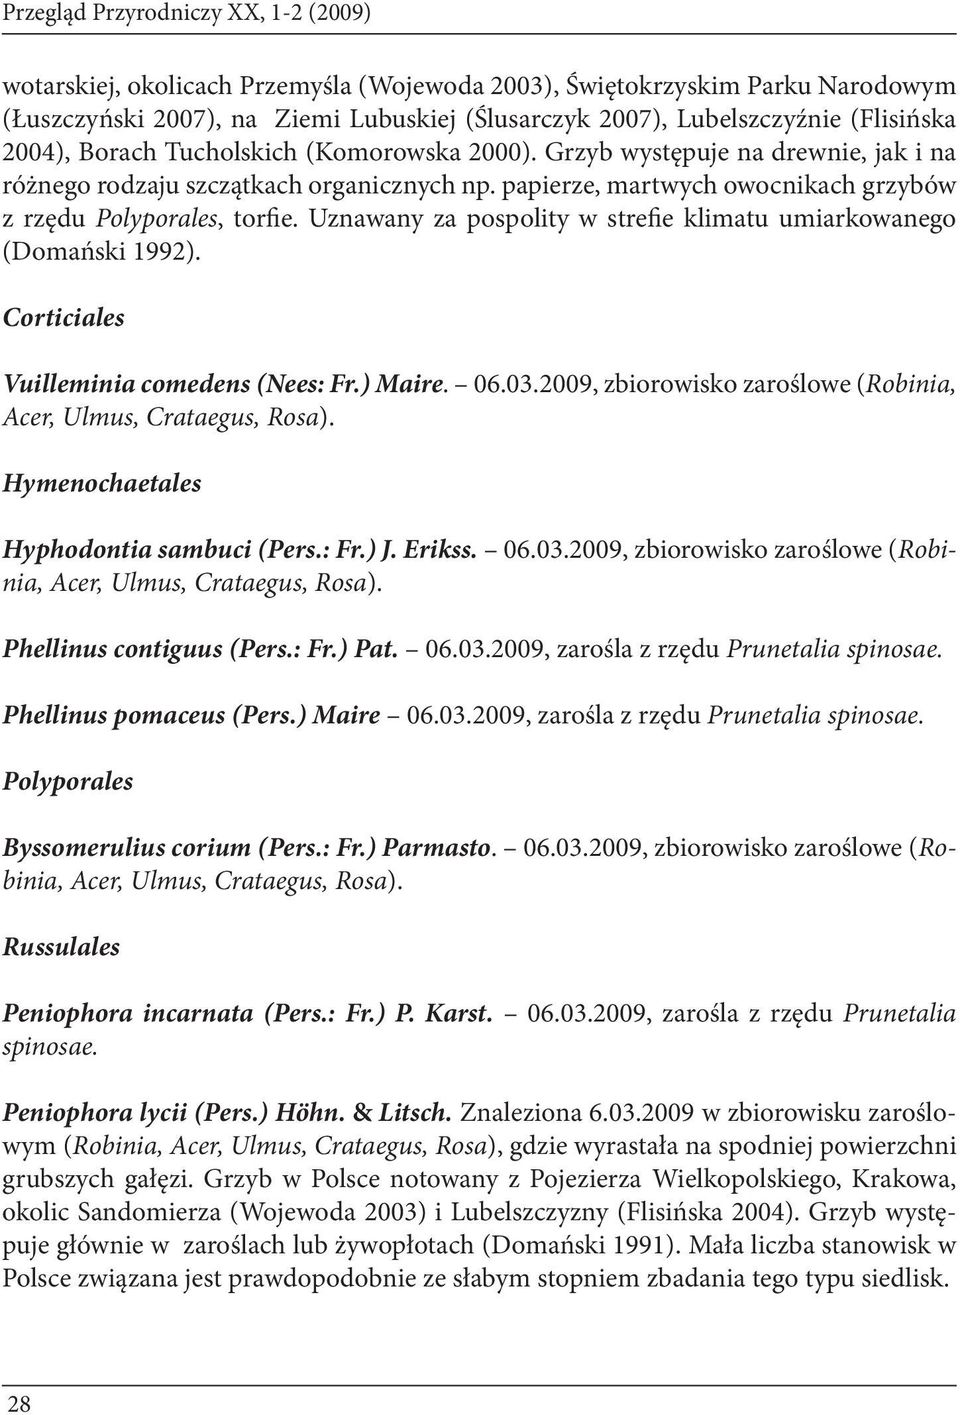 papierze, martwych owocnikach grzybów z rzędu Polyporales, torfie. Uznawany za pospolity w strefie klimatu umiarkowanego (Domański 1992). Corticiales Vuilleminia comedens (Nees: Fr.) Maire. 06.03.